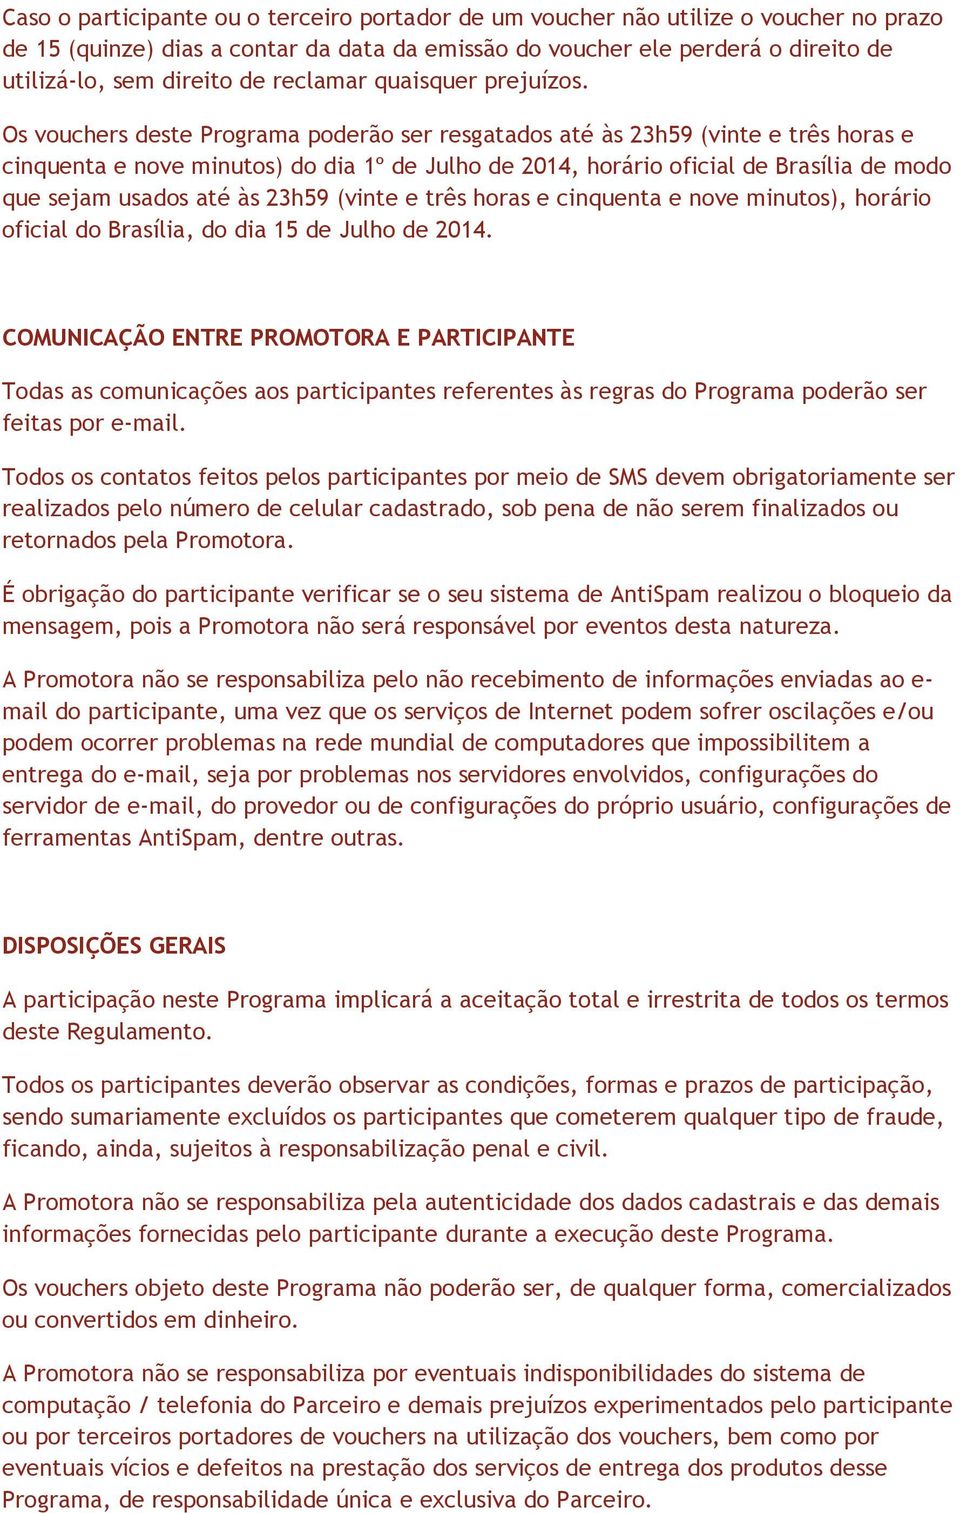 Os vouchers deste Programa poderão ser resgatados até às 23h59 (vinte e três horas e cinquenta e nove minutos) do dia 1º de Julho de 2014, horário oficial de Brasília de modo que sejam usados até às